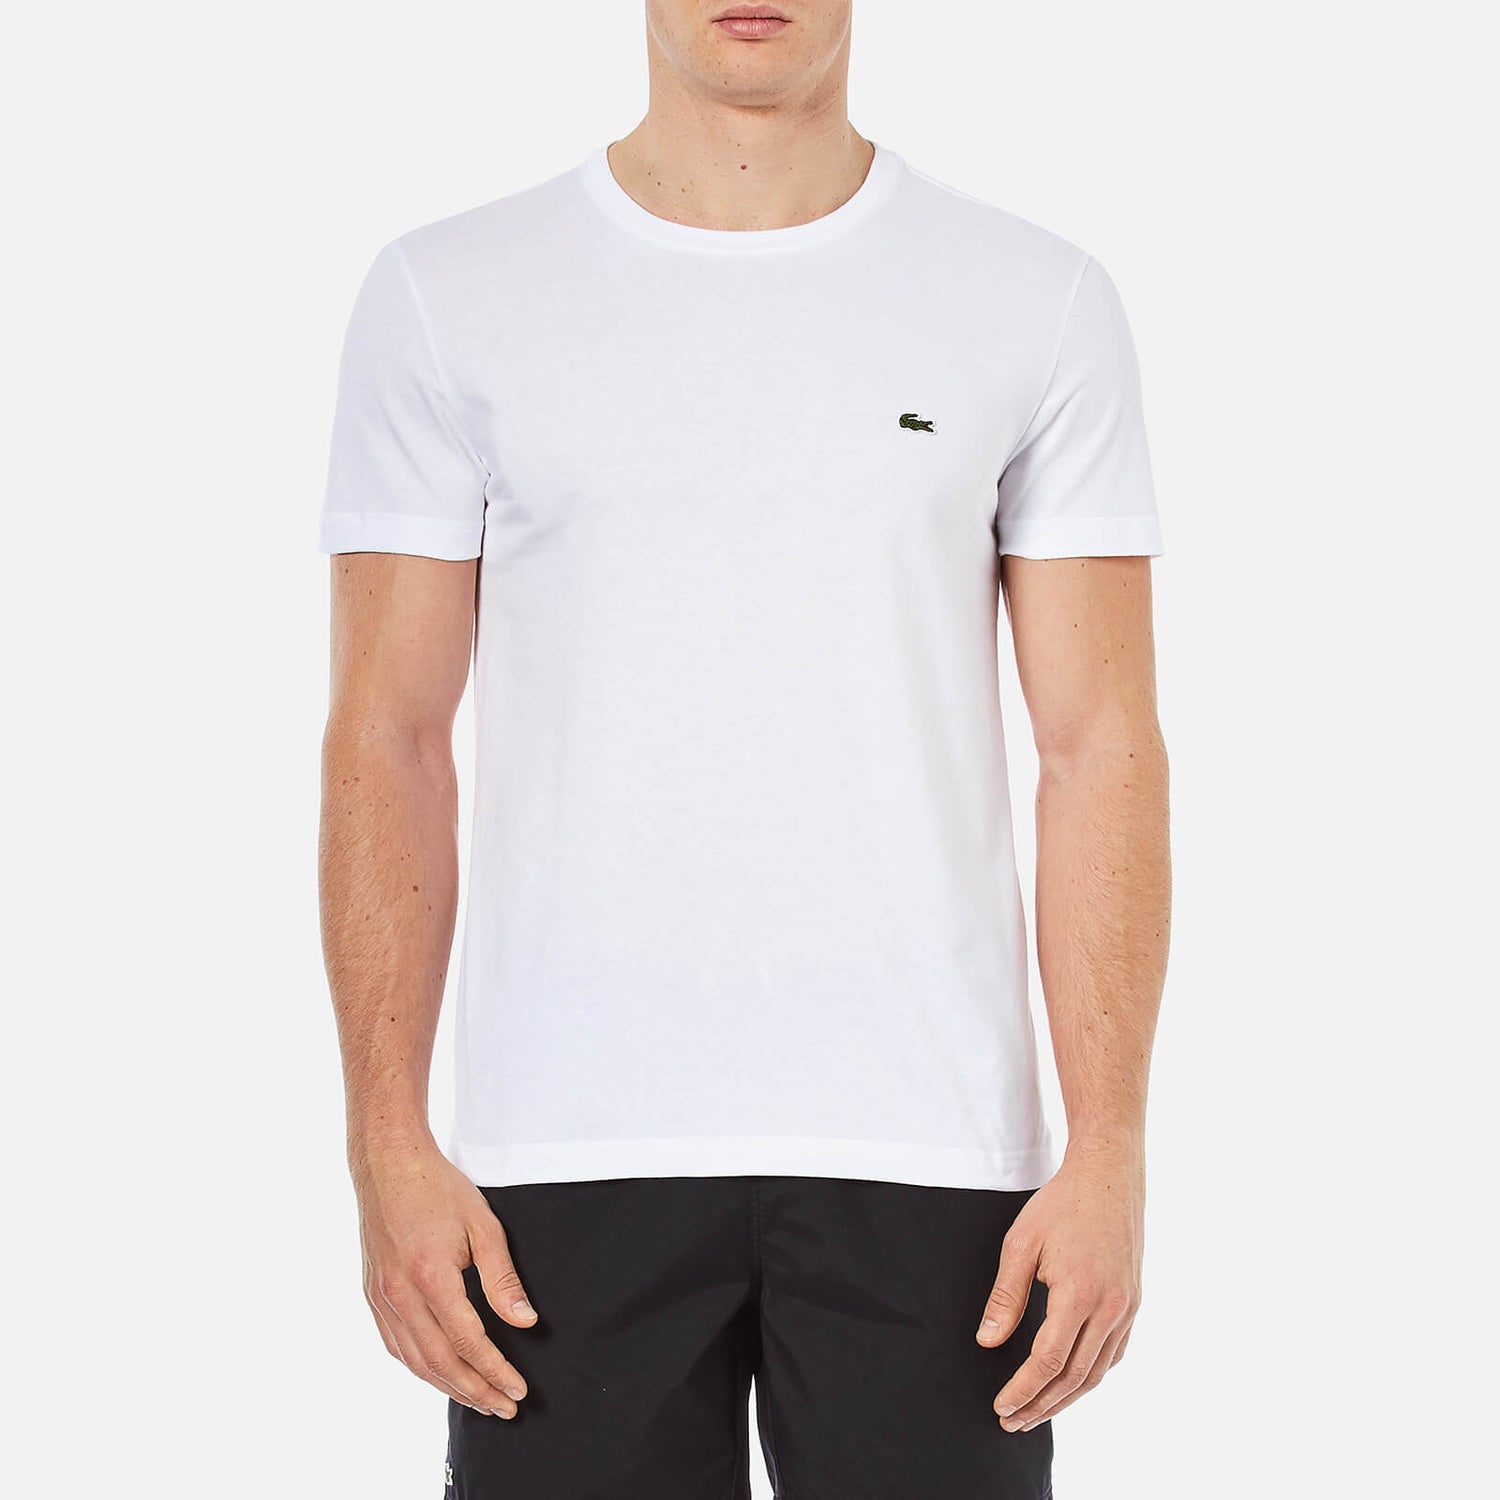 Lacoste Men's Cotton Crewneck T-Shirt - White